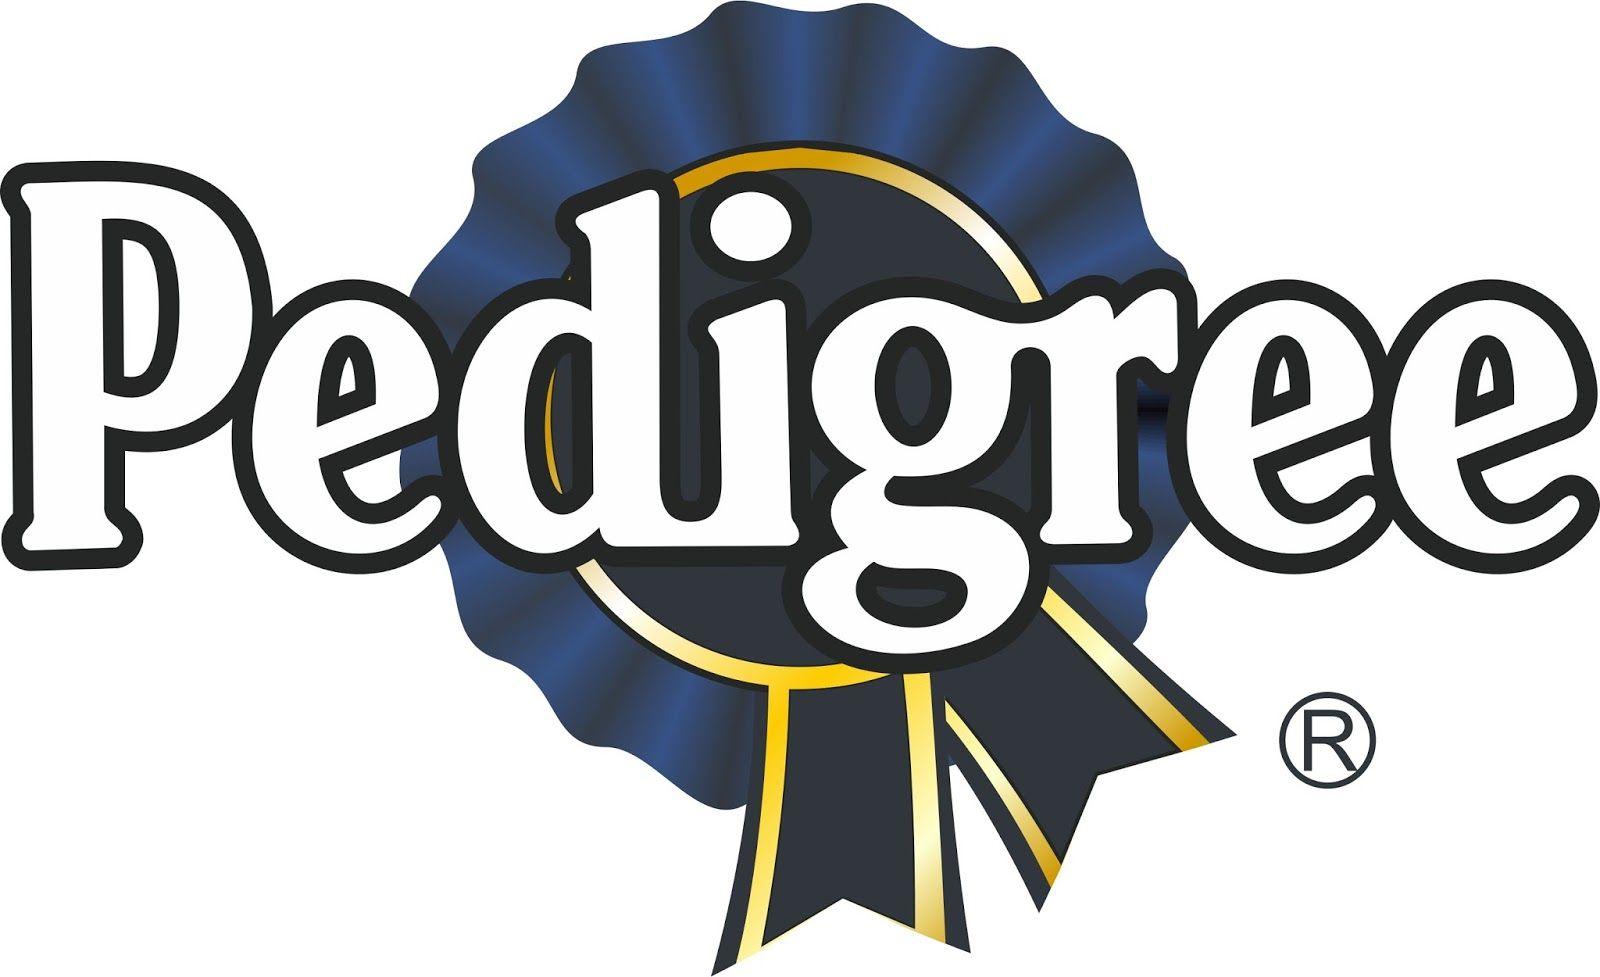 Pedigree Logo - Pedigree Logos Design - #GolfClub